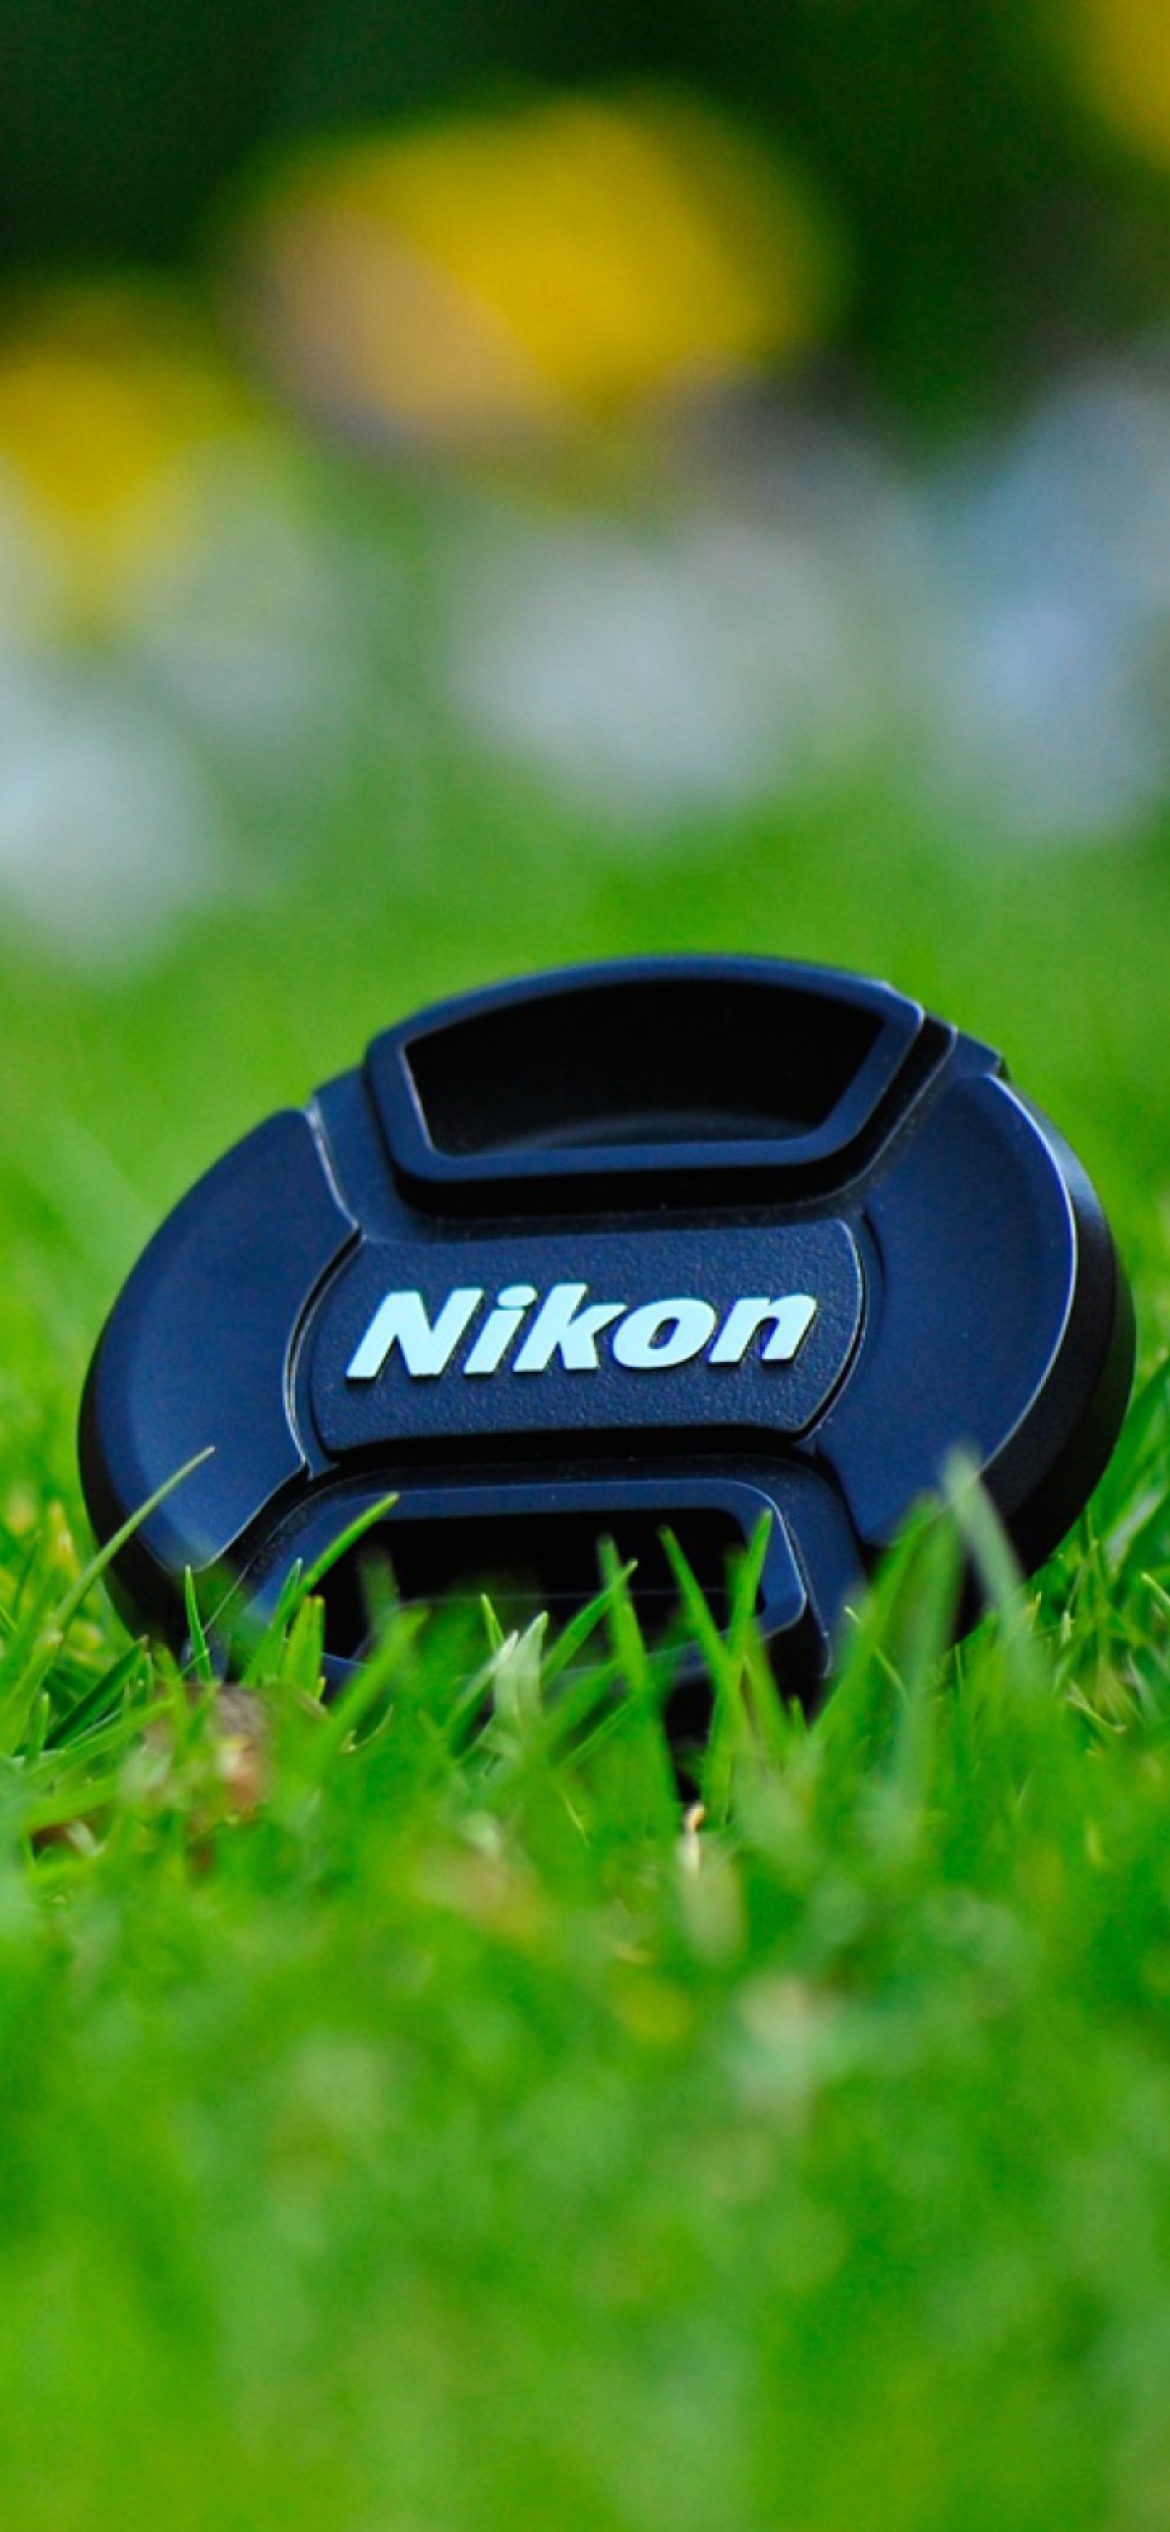 Nikon Lense Cap wallpaper 1170x2532